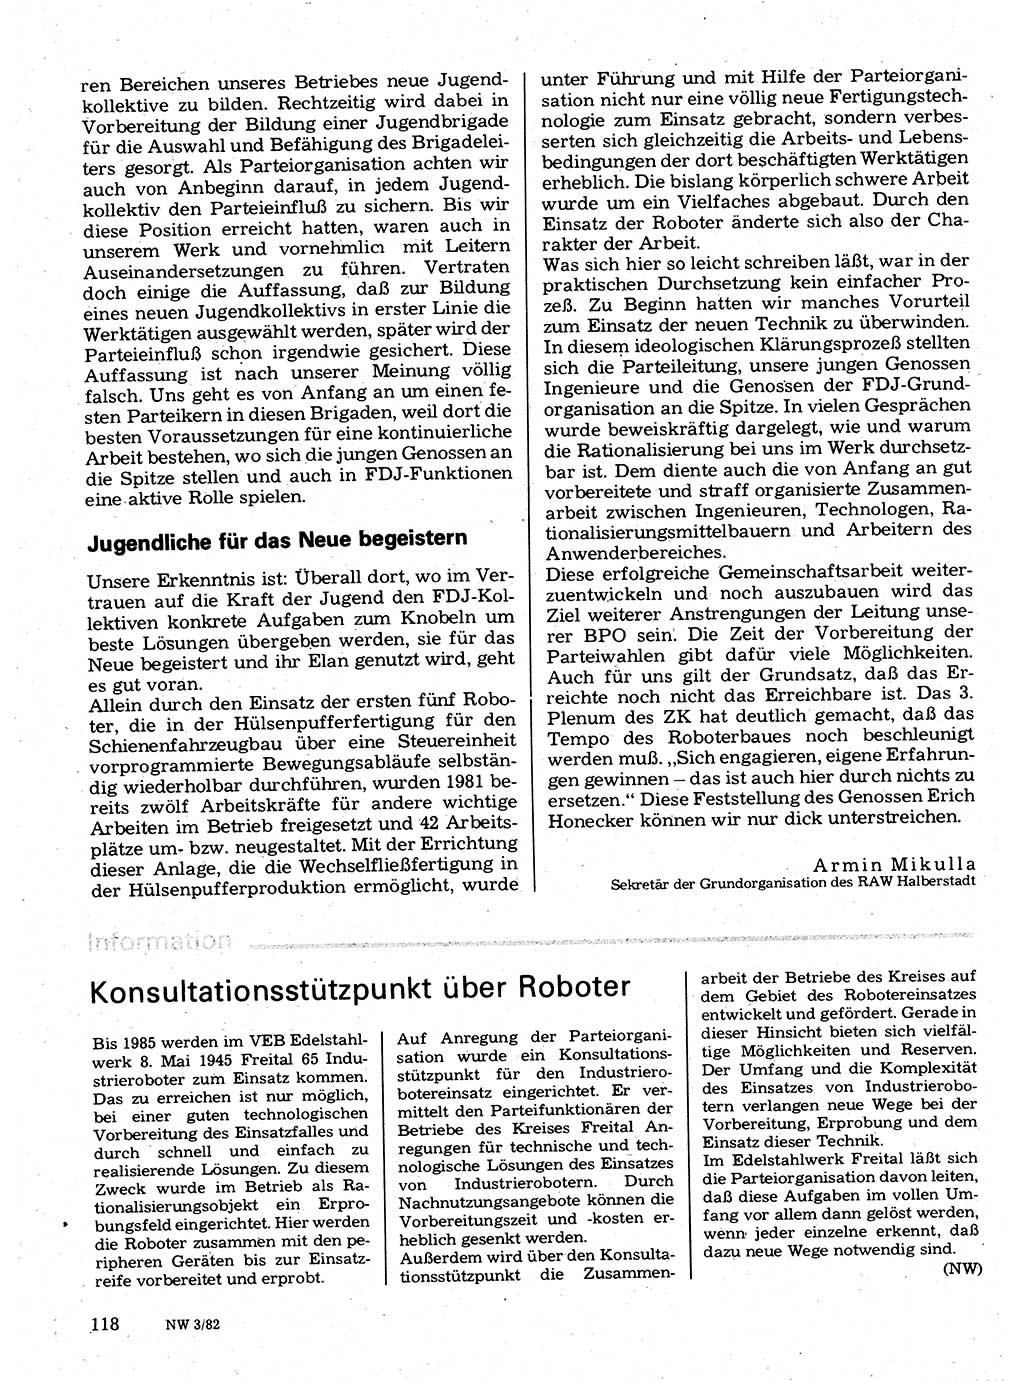 Neuer Weg (NW), Organ des Zentralkomitees (ZK) der SED (Sozialistische Einheitspartei Deutschlands) für Fragen des Parteilebens, 37. Jahrgang [Deutsche Demokratische Republik (DDR)] 1982, Seite 118 (NW ZK SED DDR 1982, S. 118)